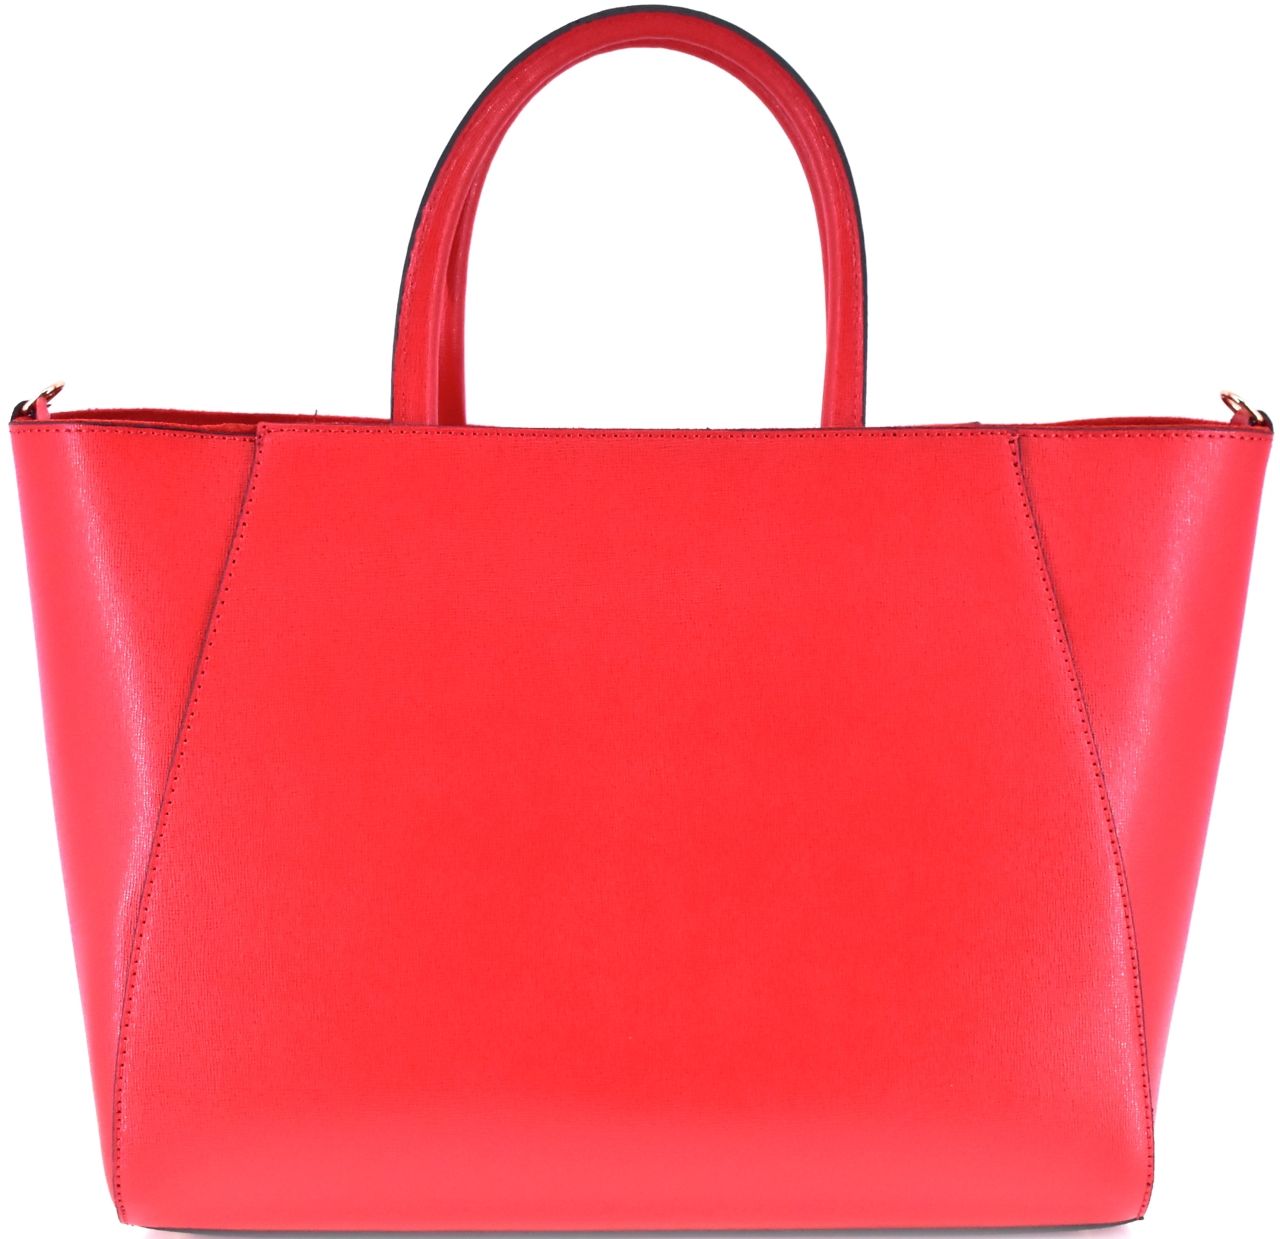 Moderní Shopper dámská kožená kabelka Arteddy - červená 32454